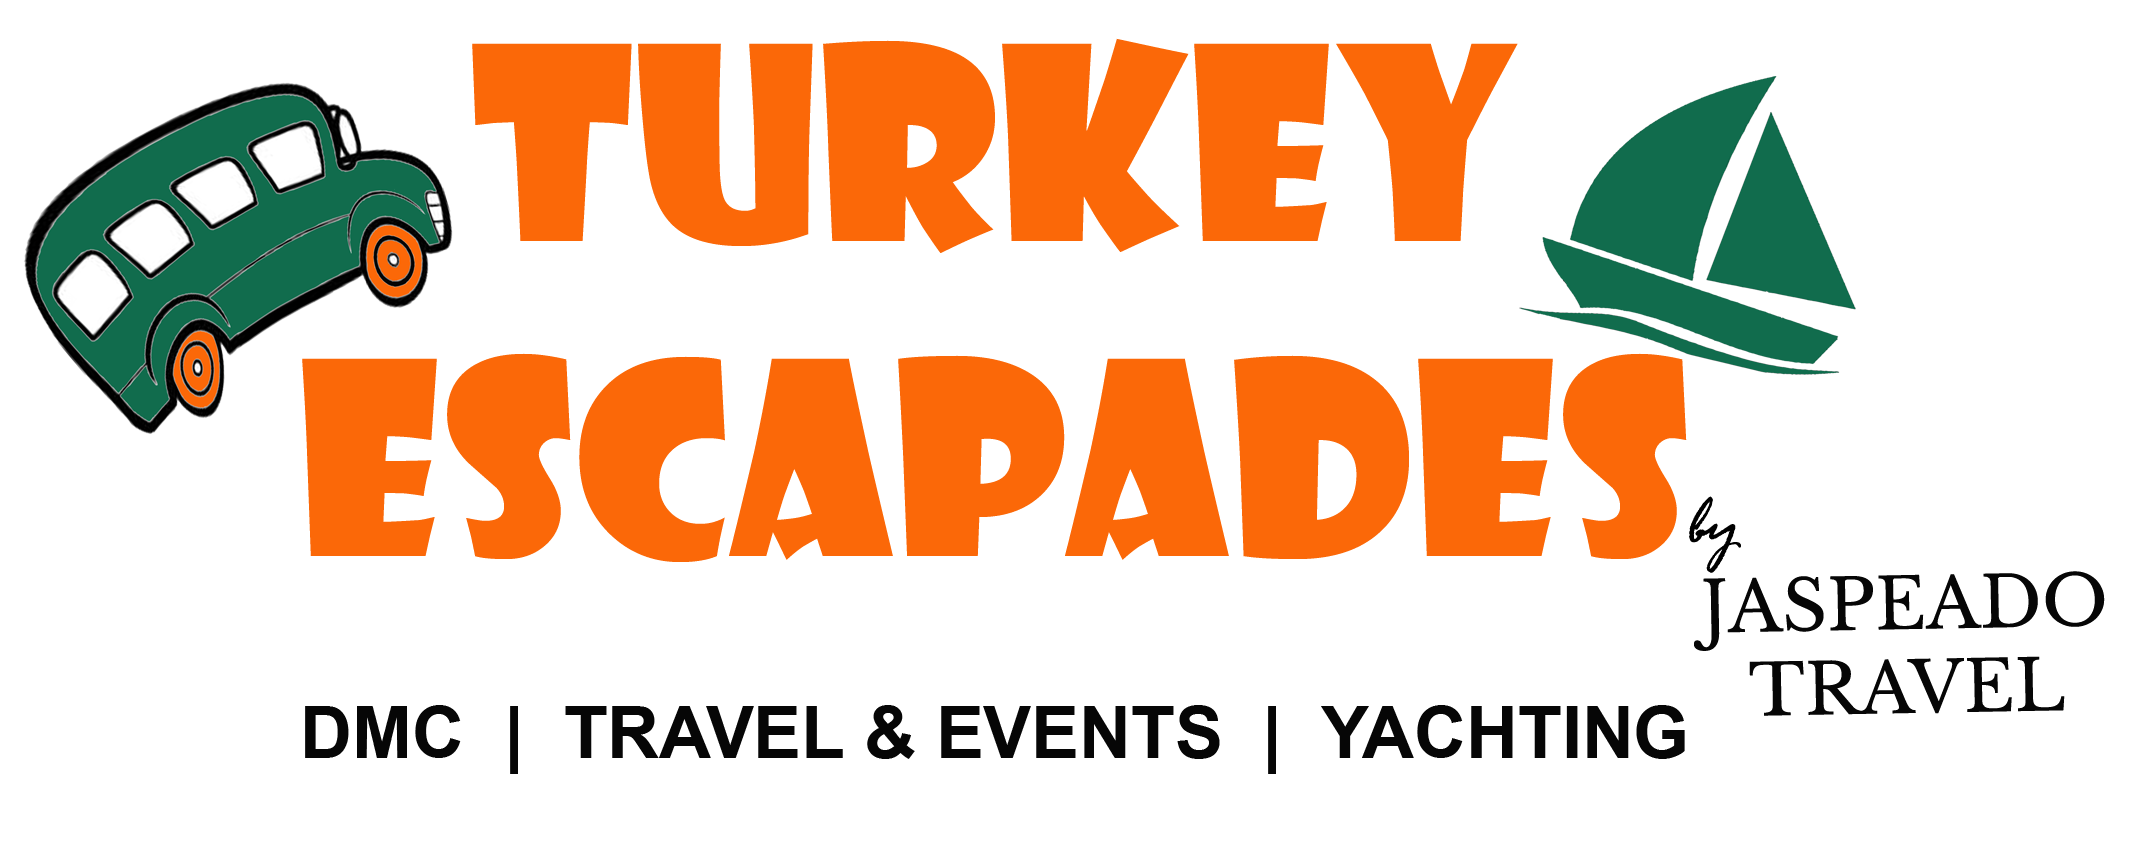 Turkey Escapades | Contact us - Turkey Escapades